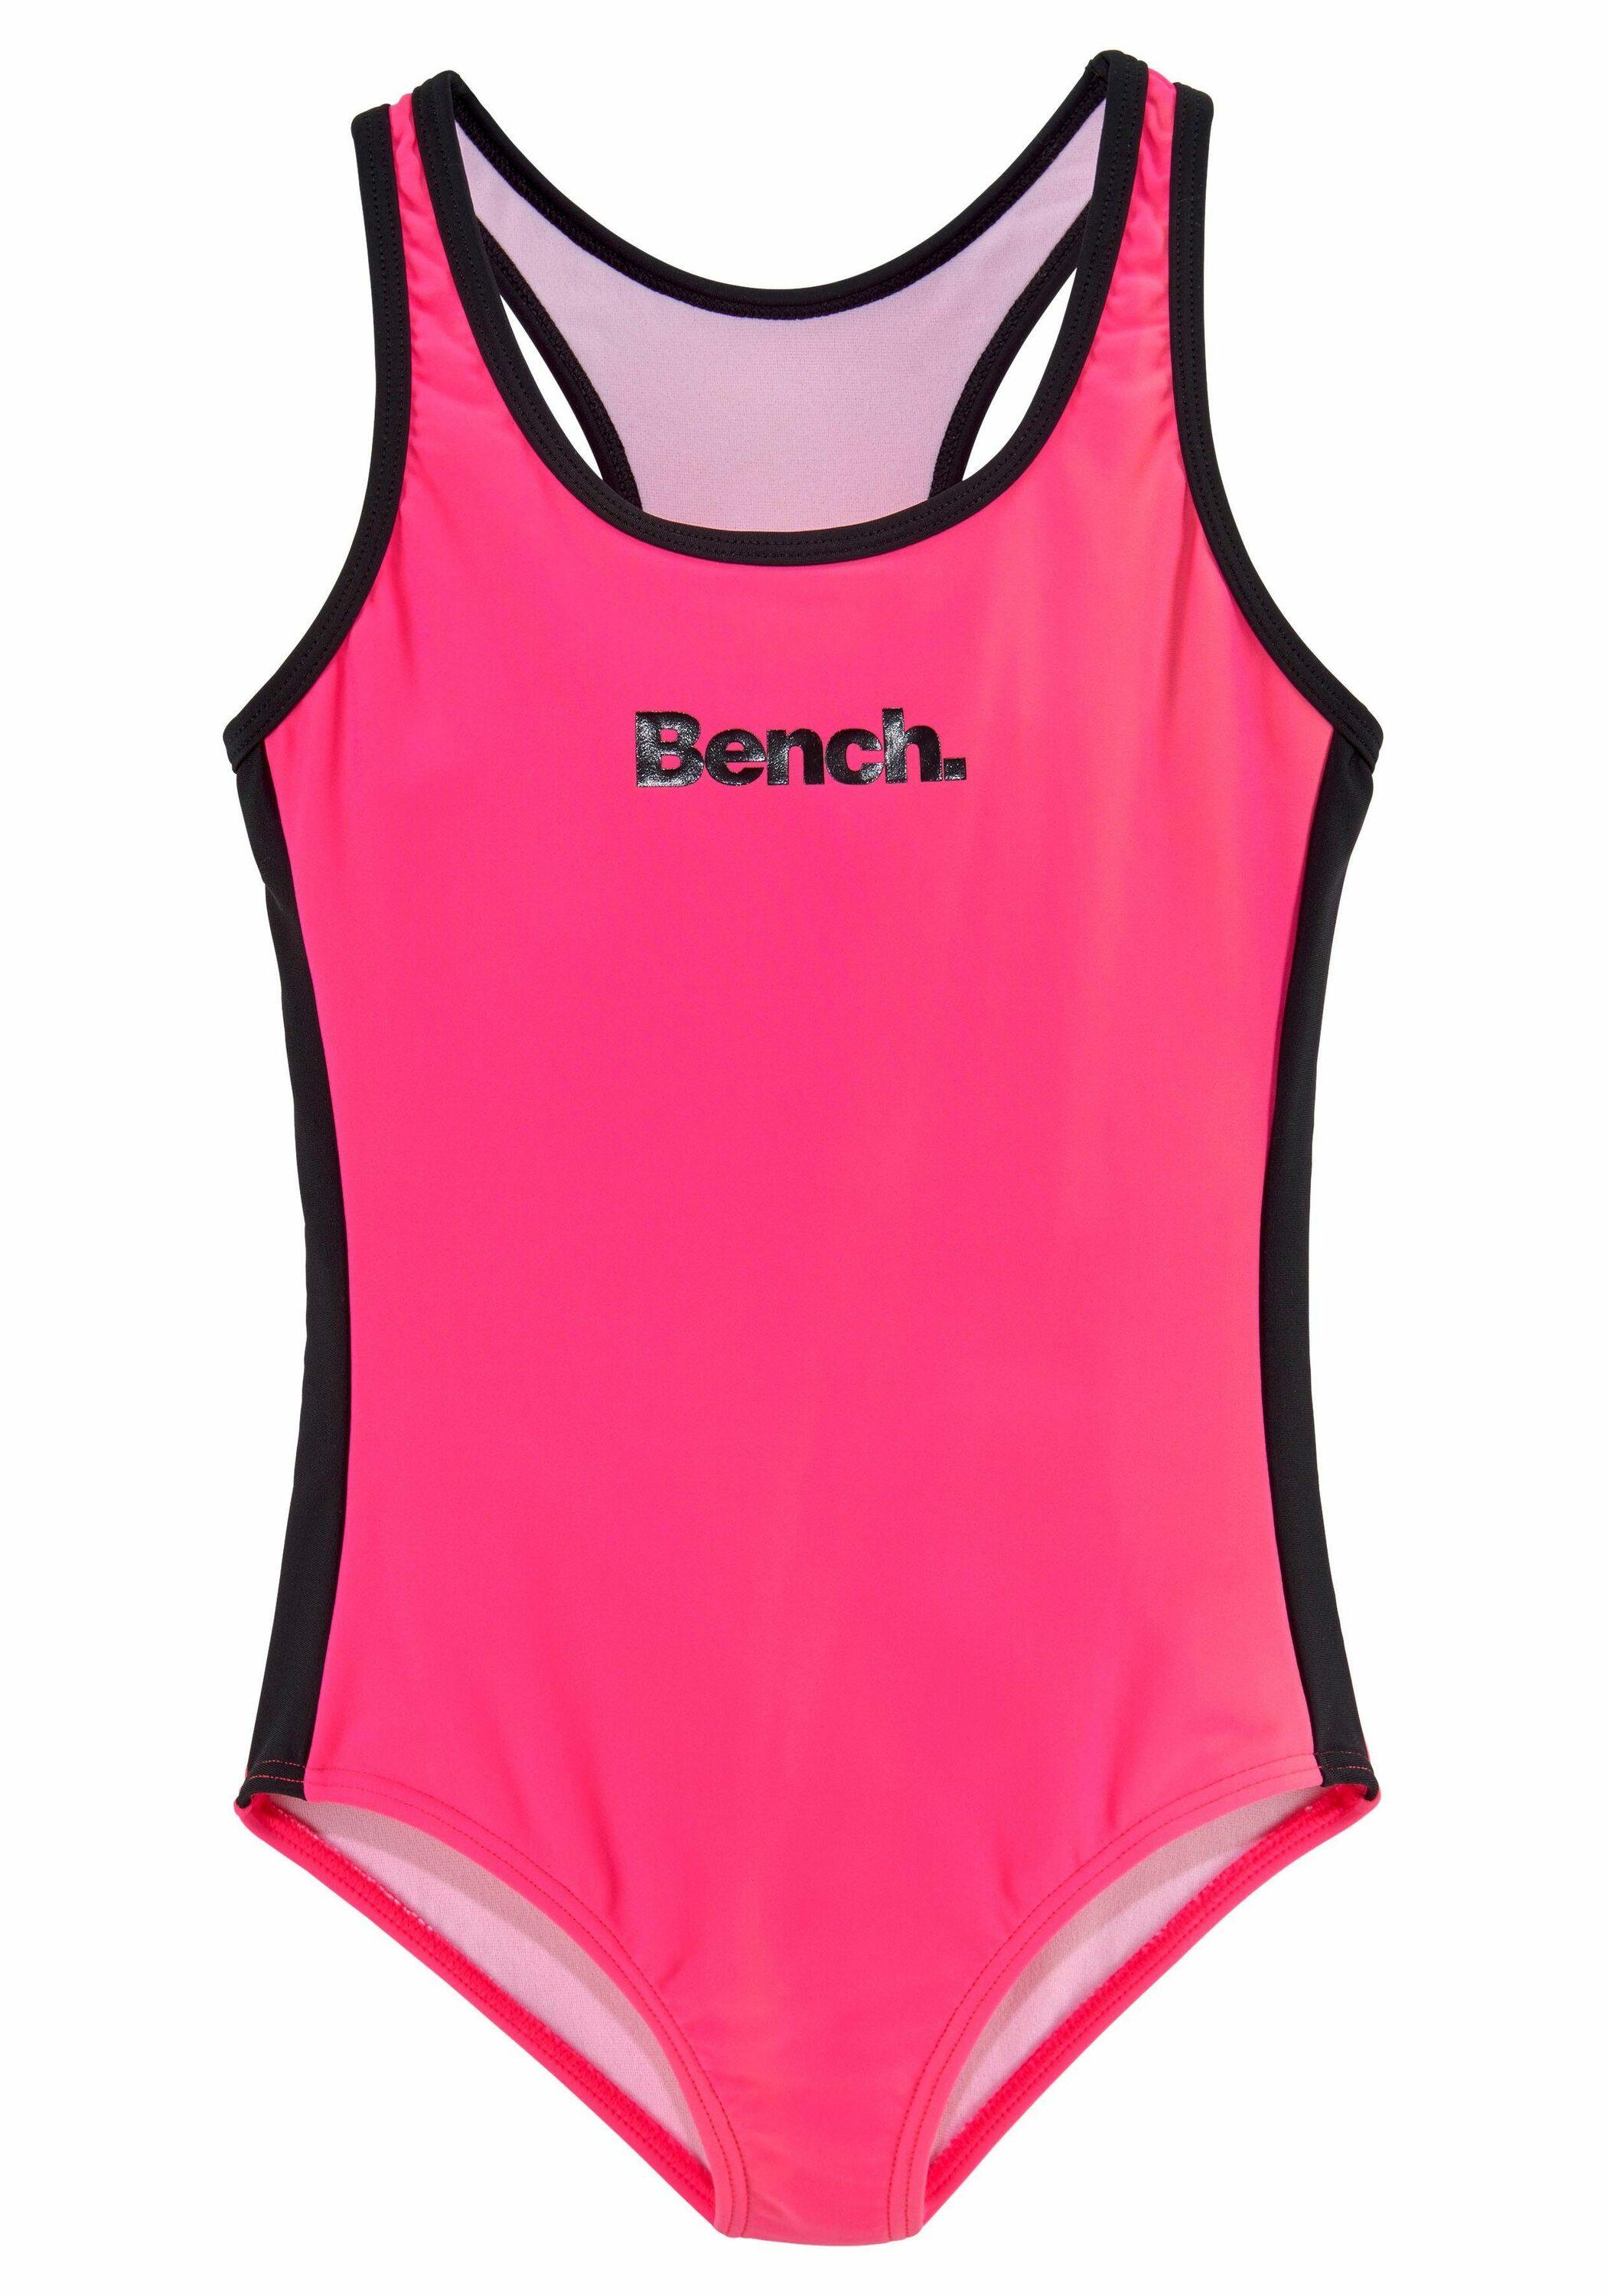 Bench im pink-schwarz Damen von Online Badeanzug Shop SportScheck kaufen